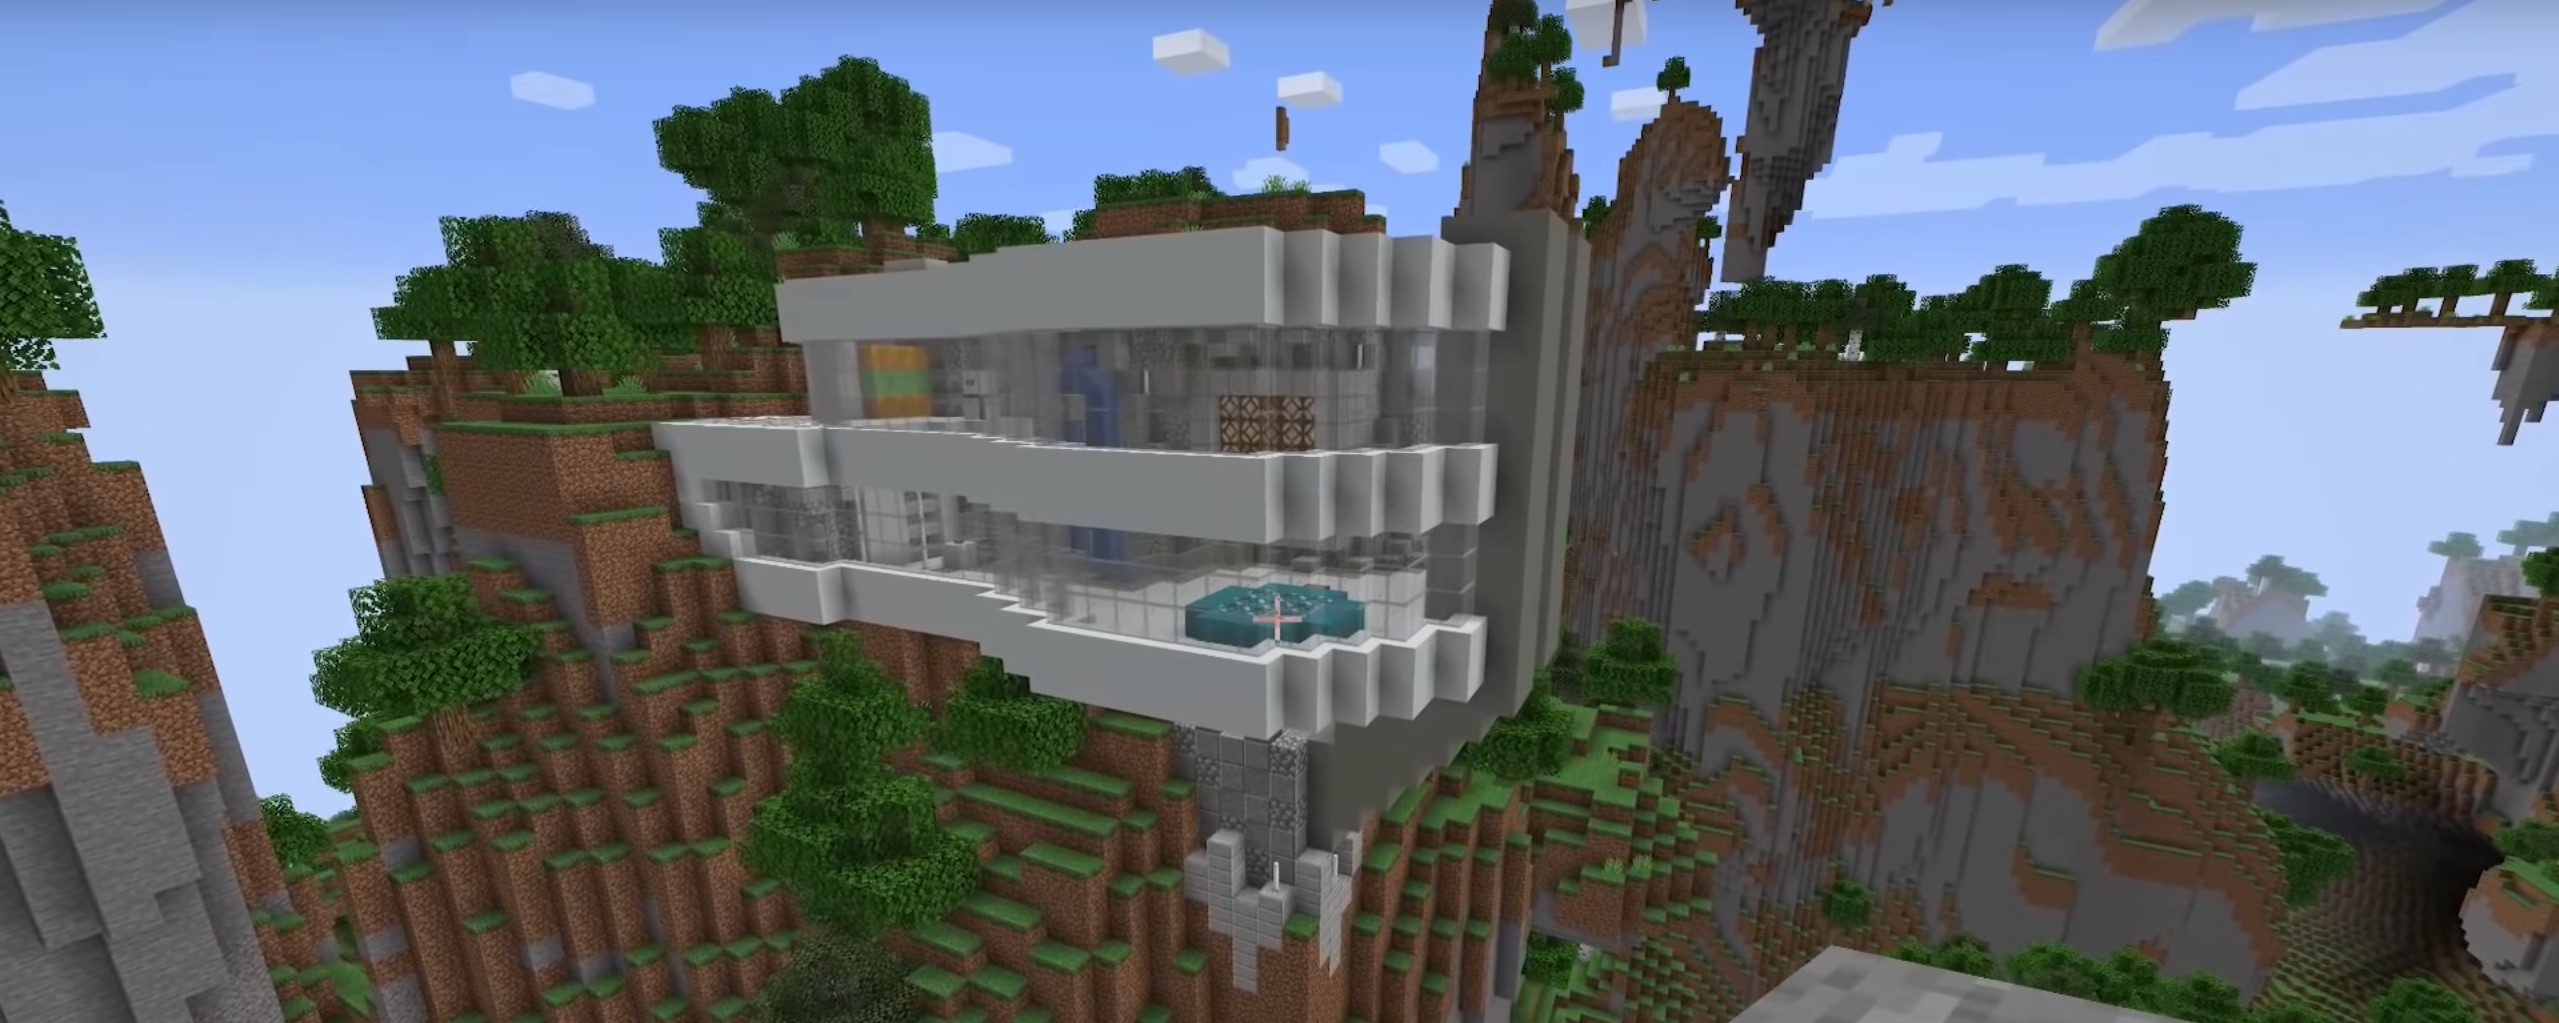 Minecraft Superhero Piston House idea